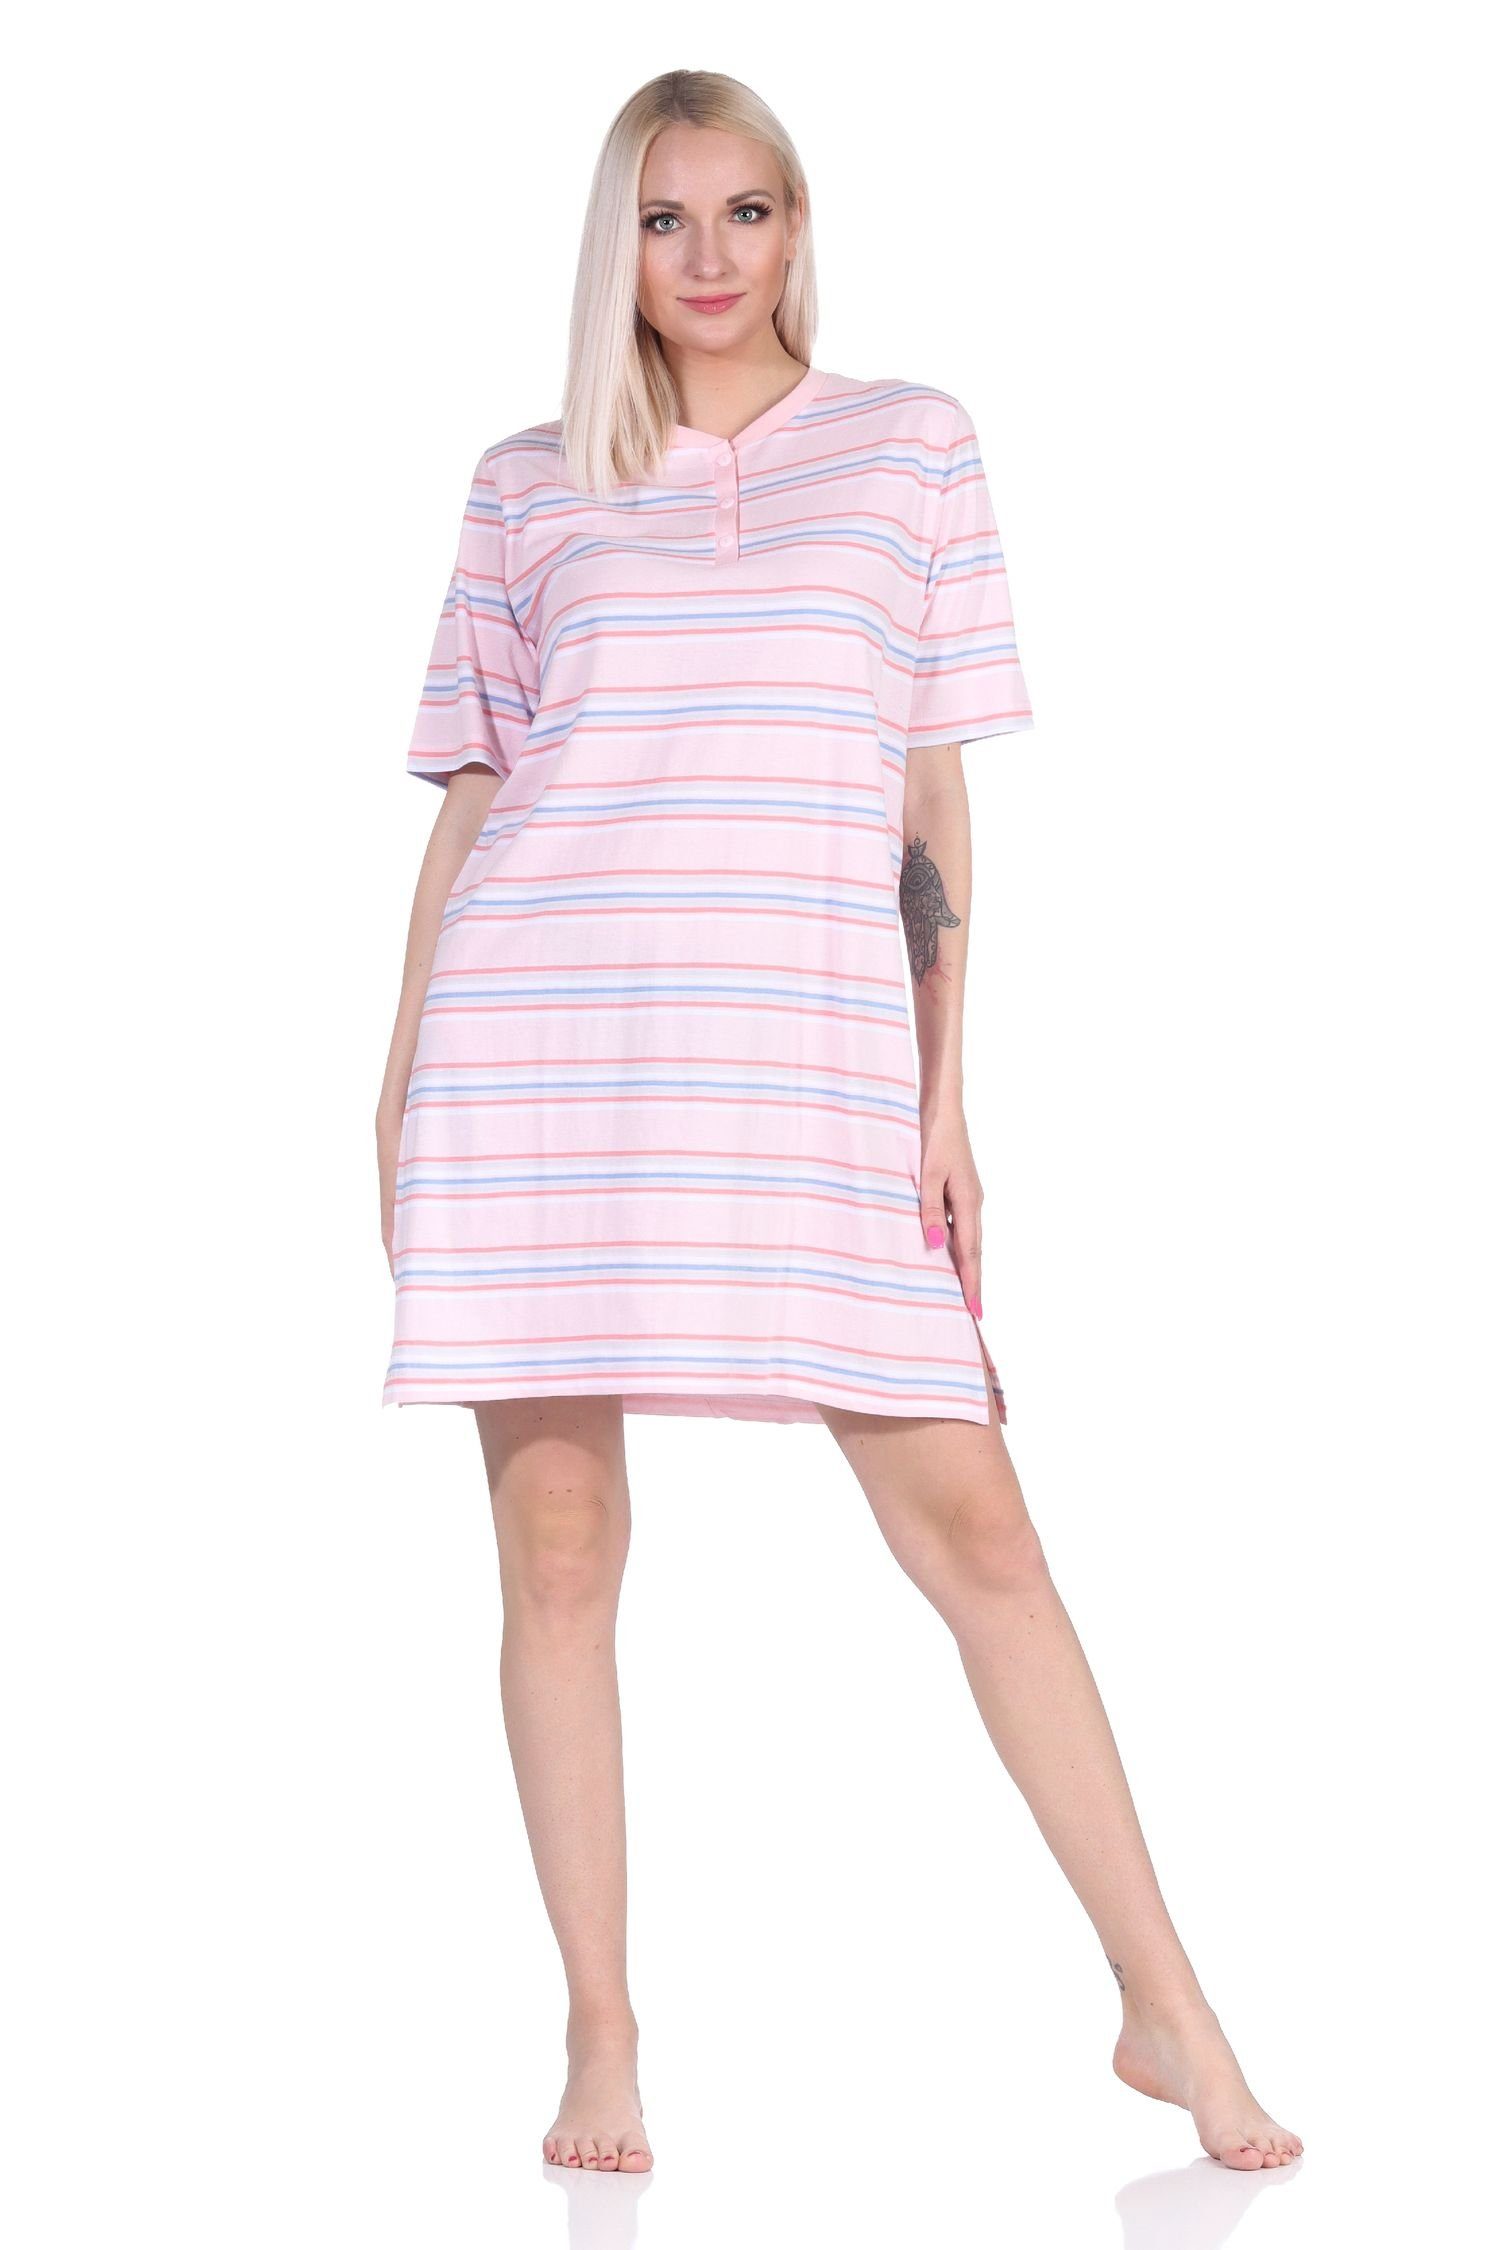 Normann Nachthemd Damen kurzarm Nachthemd in pastellfarbenen Streifen - 122 863 rosa